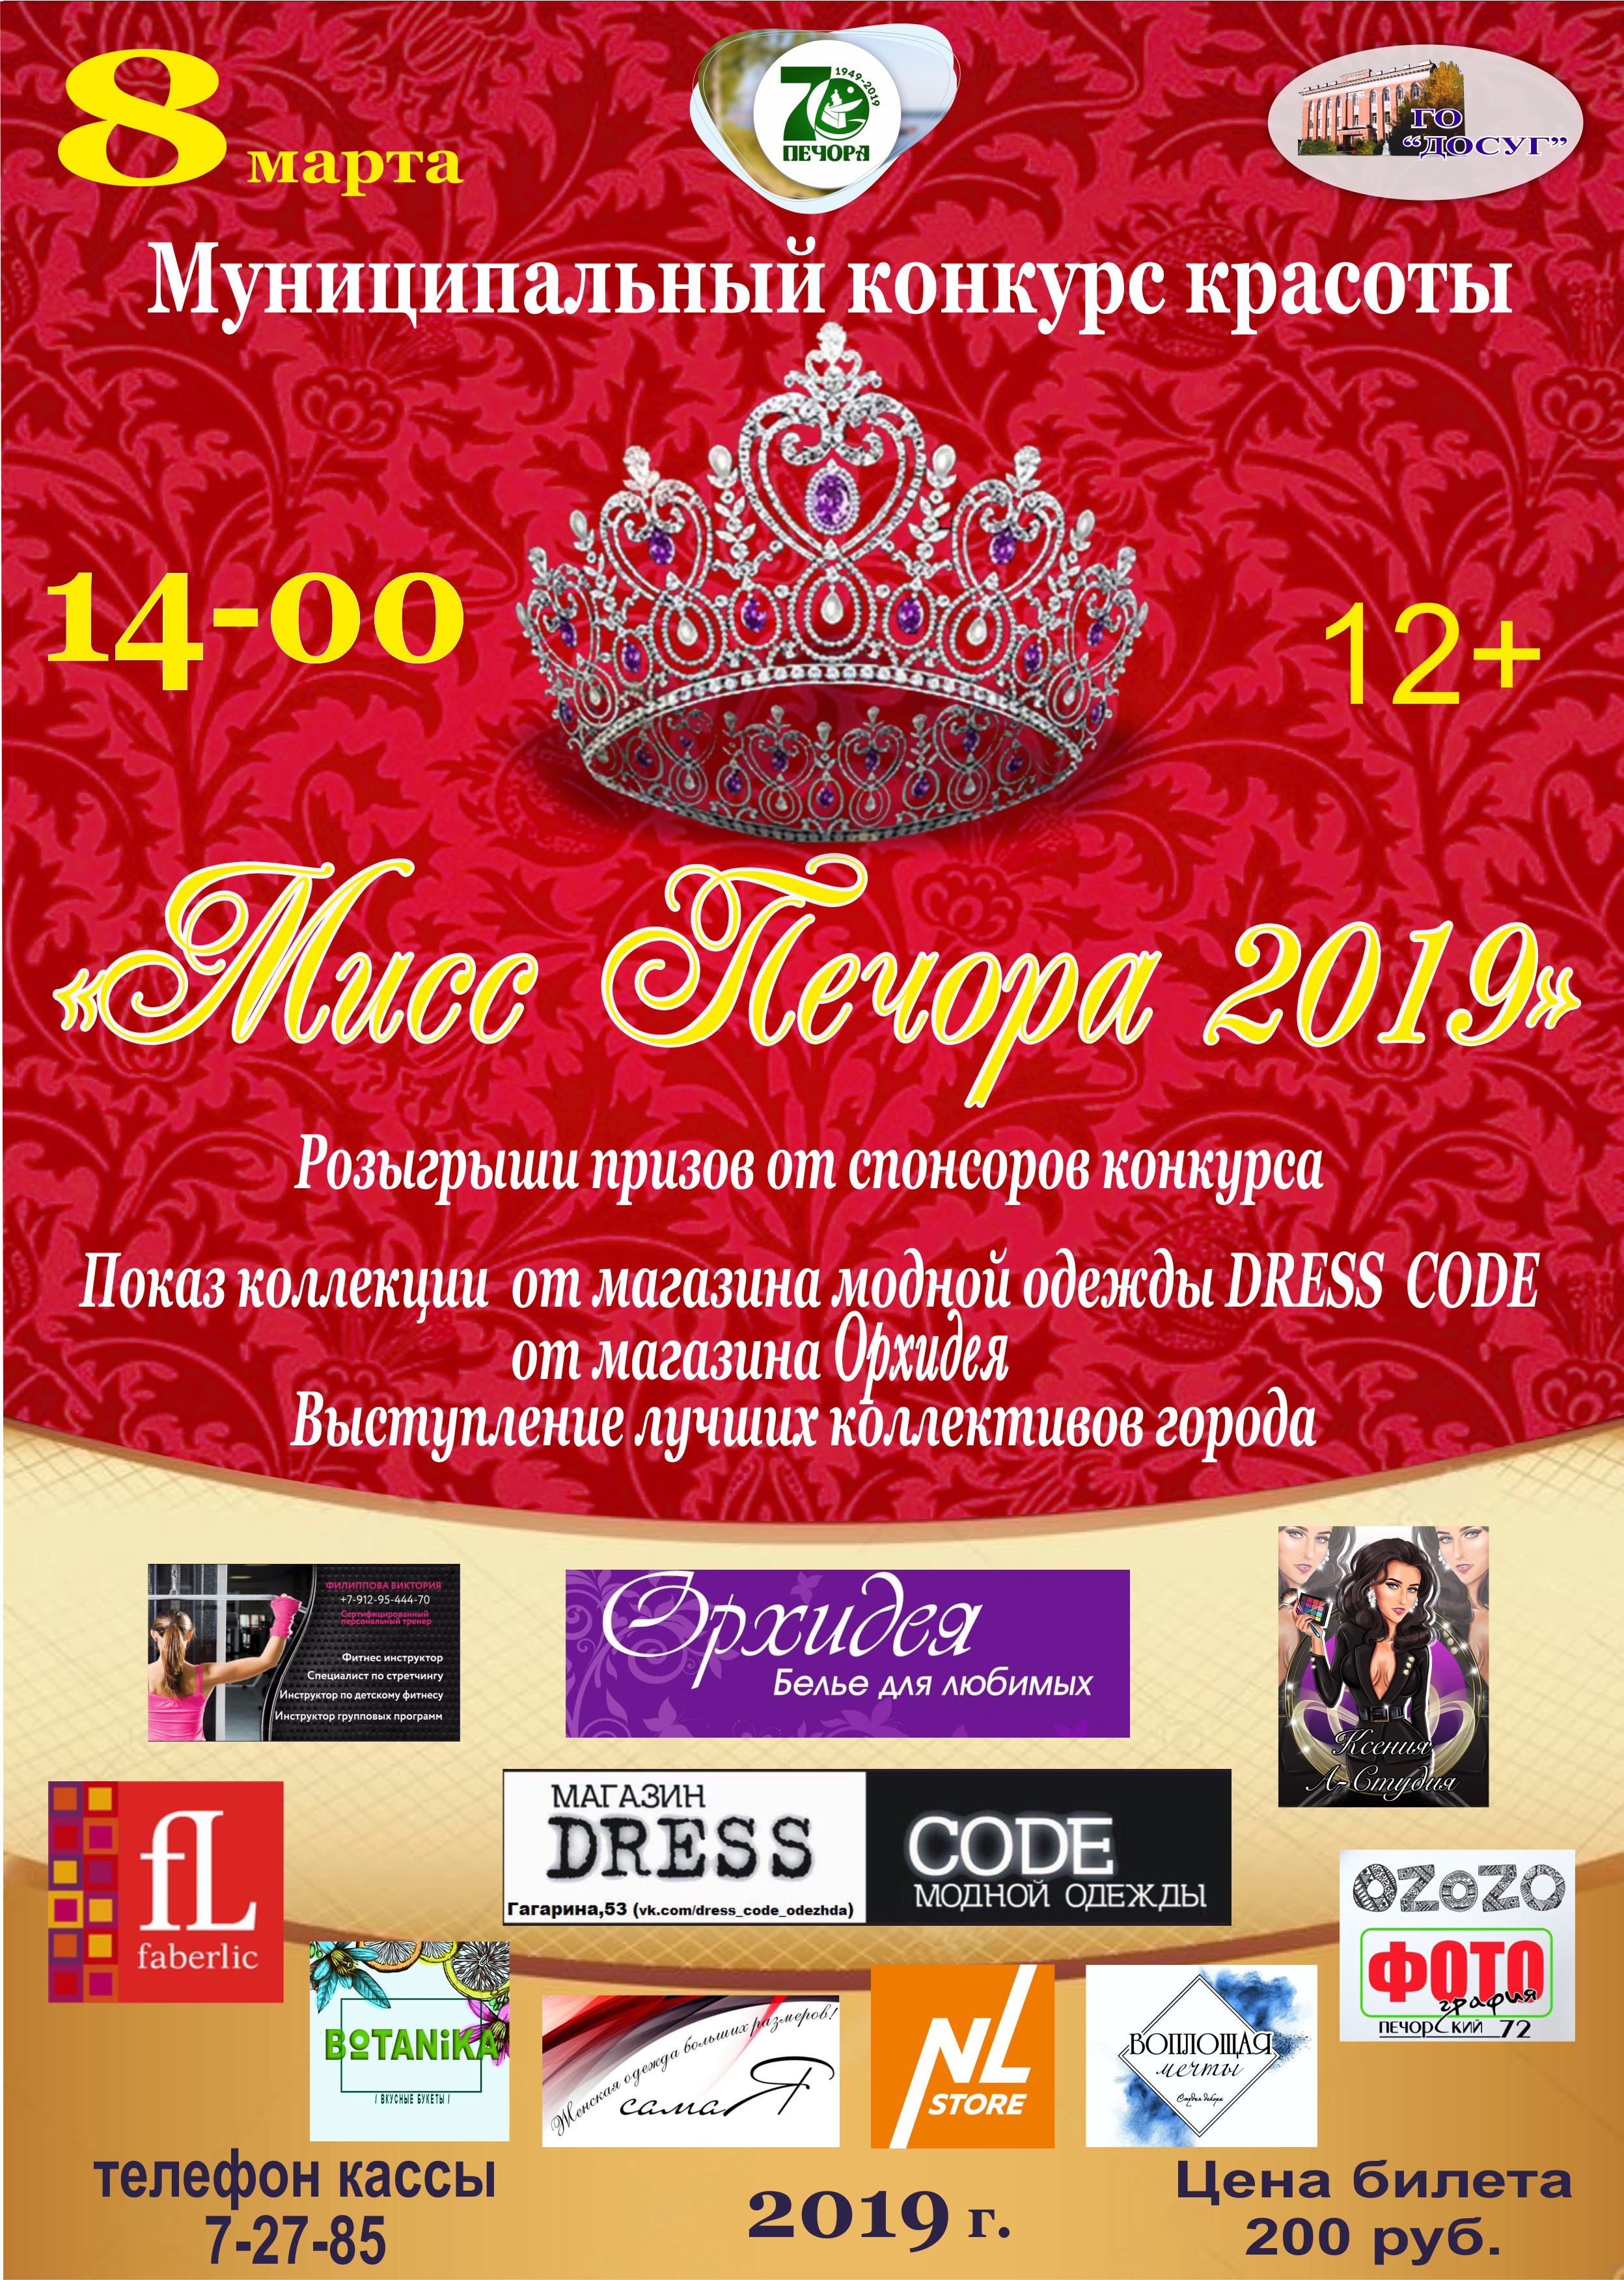 — 08 марта в 14.00 Муниципальный конкурс красоты “Мисс Печора 2019”. цена билета 200 руб возрастной ценз 12+